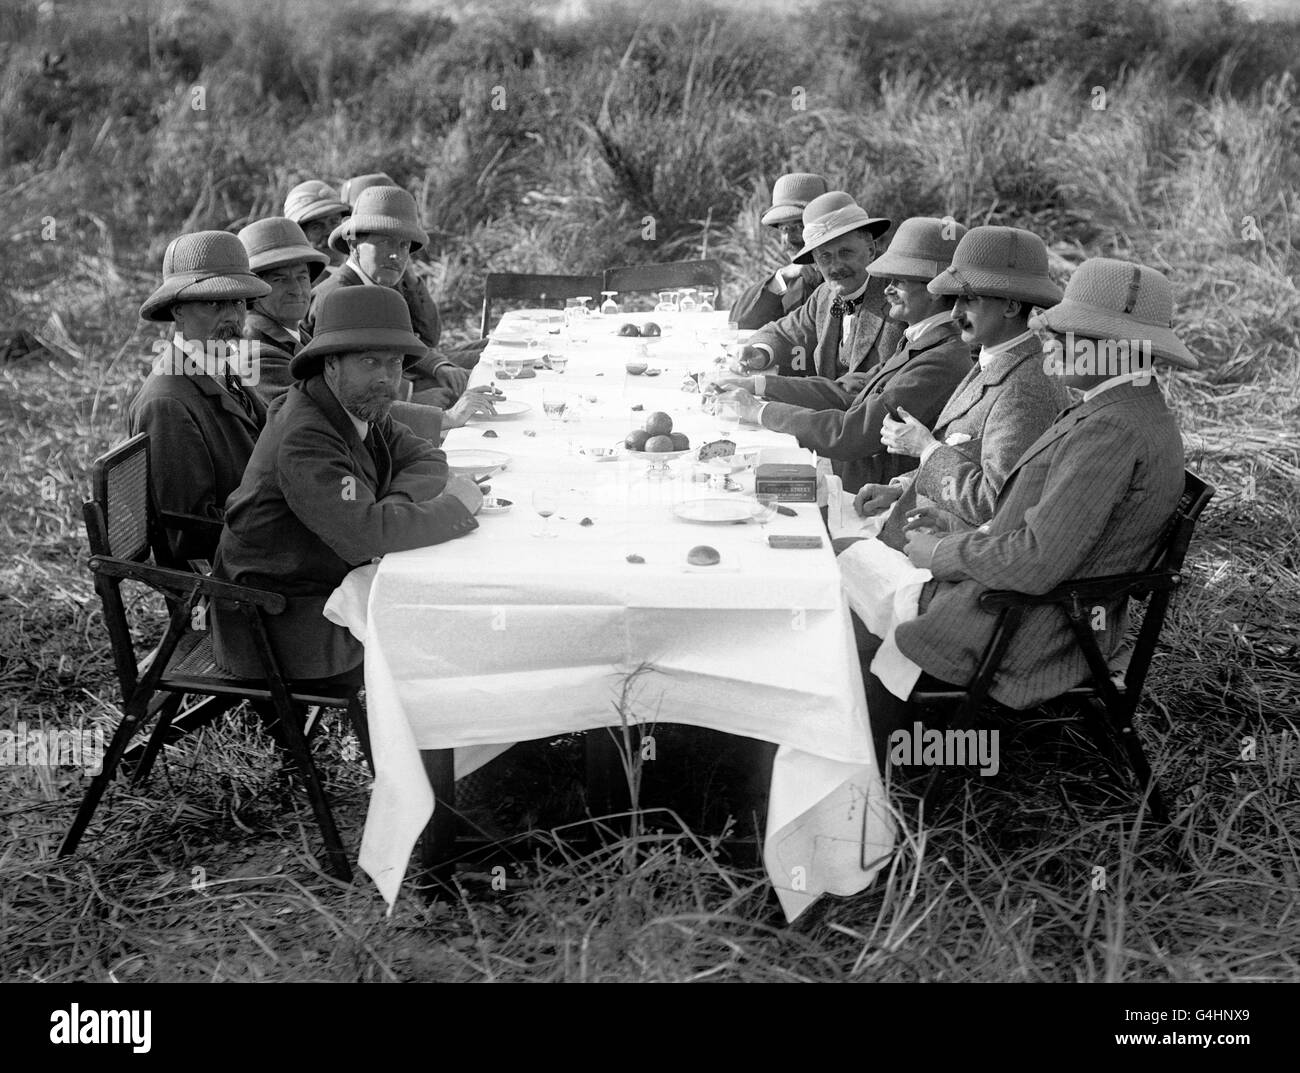 Roi George V déjeuner dans la jungle au Népal lors d'un tir de tigre. Le roi était au Népal comme invité du roi népalais. Banque D'Images